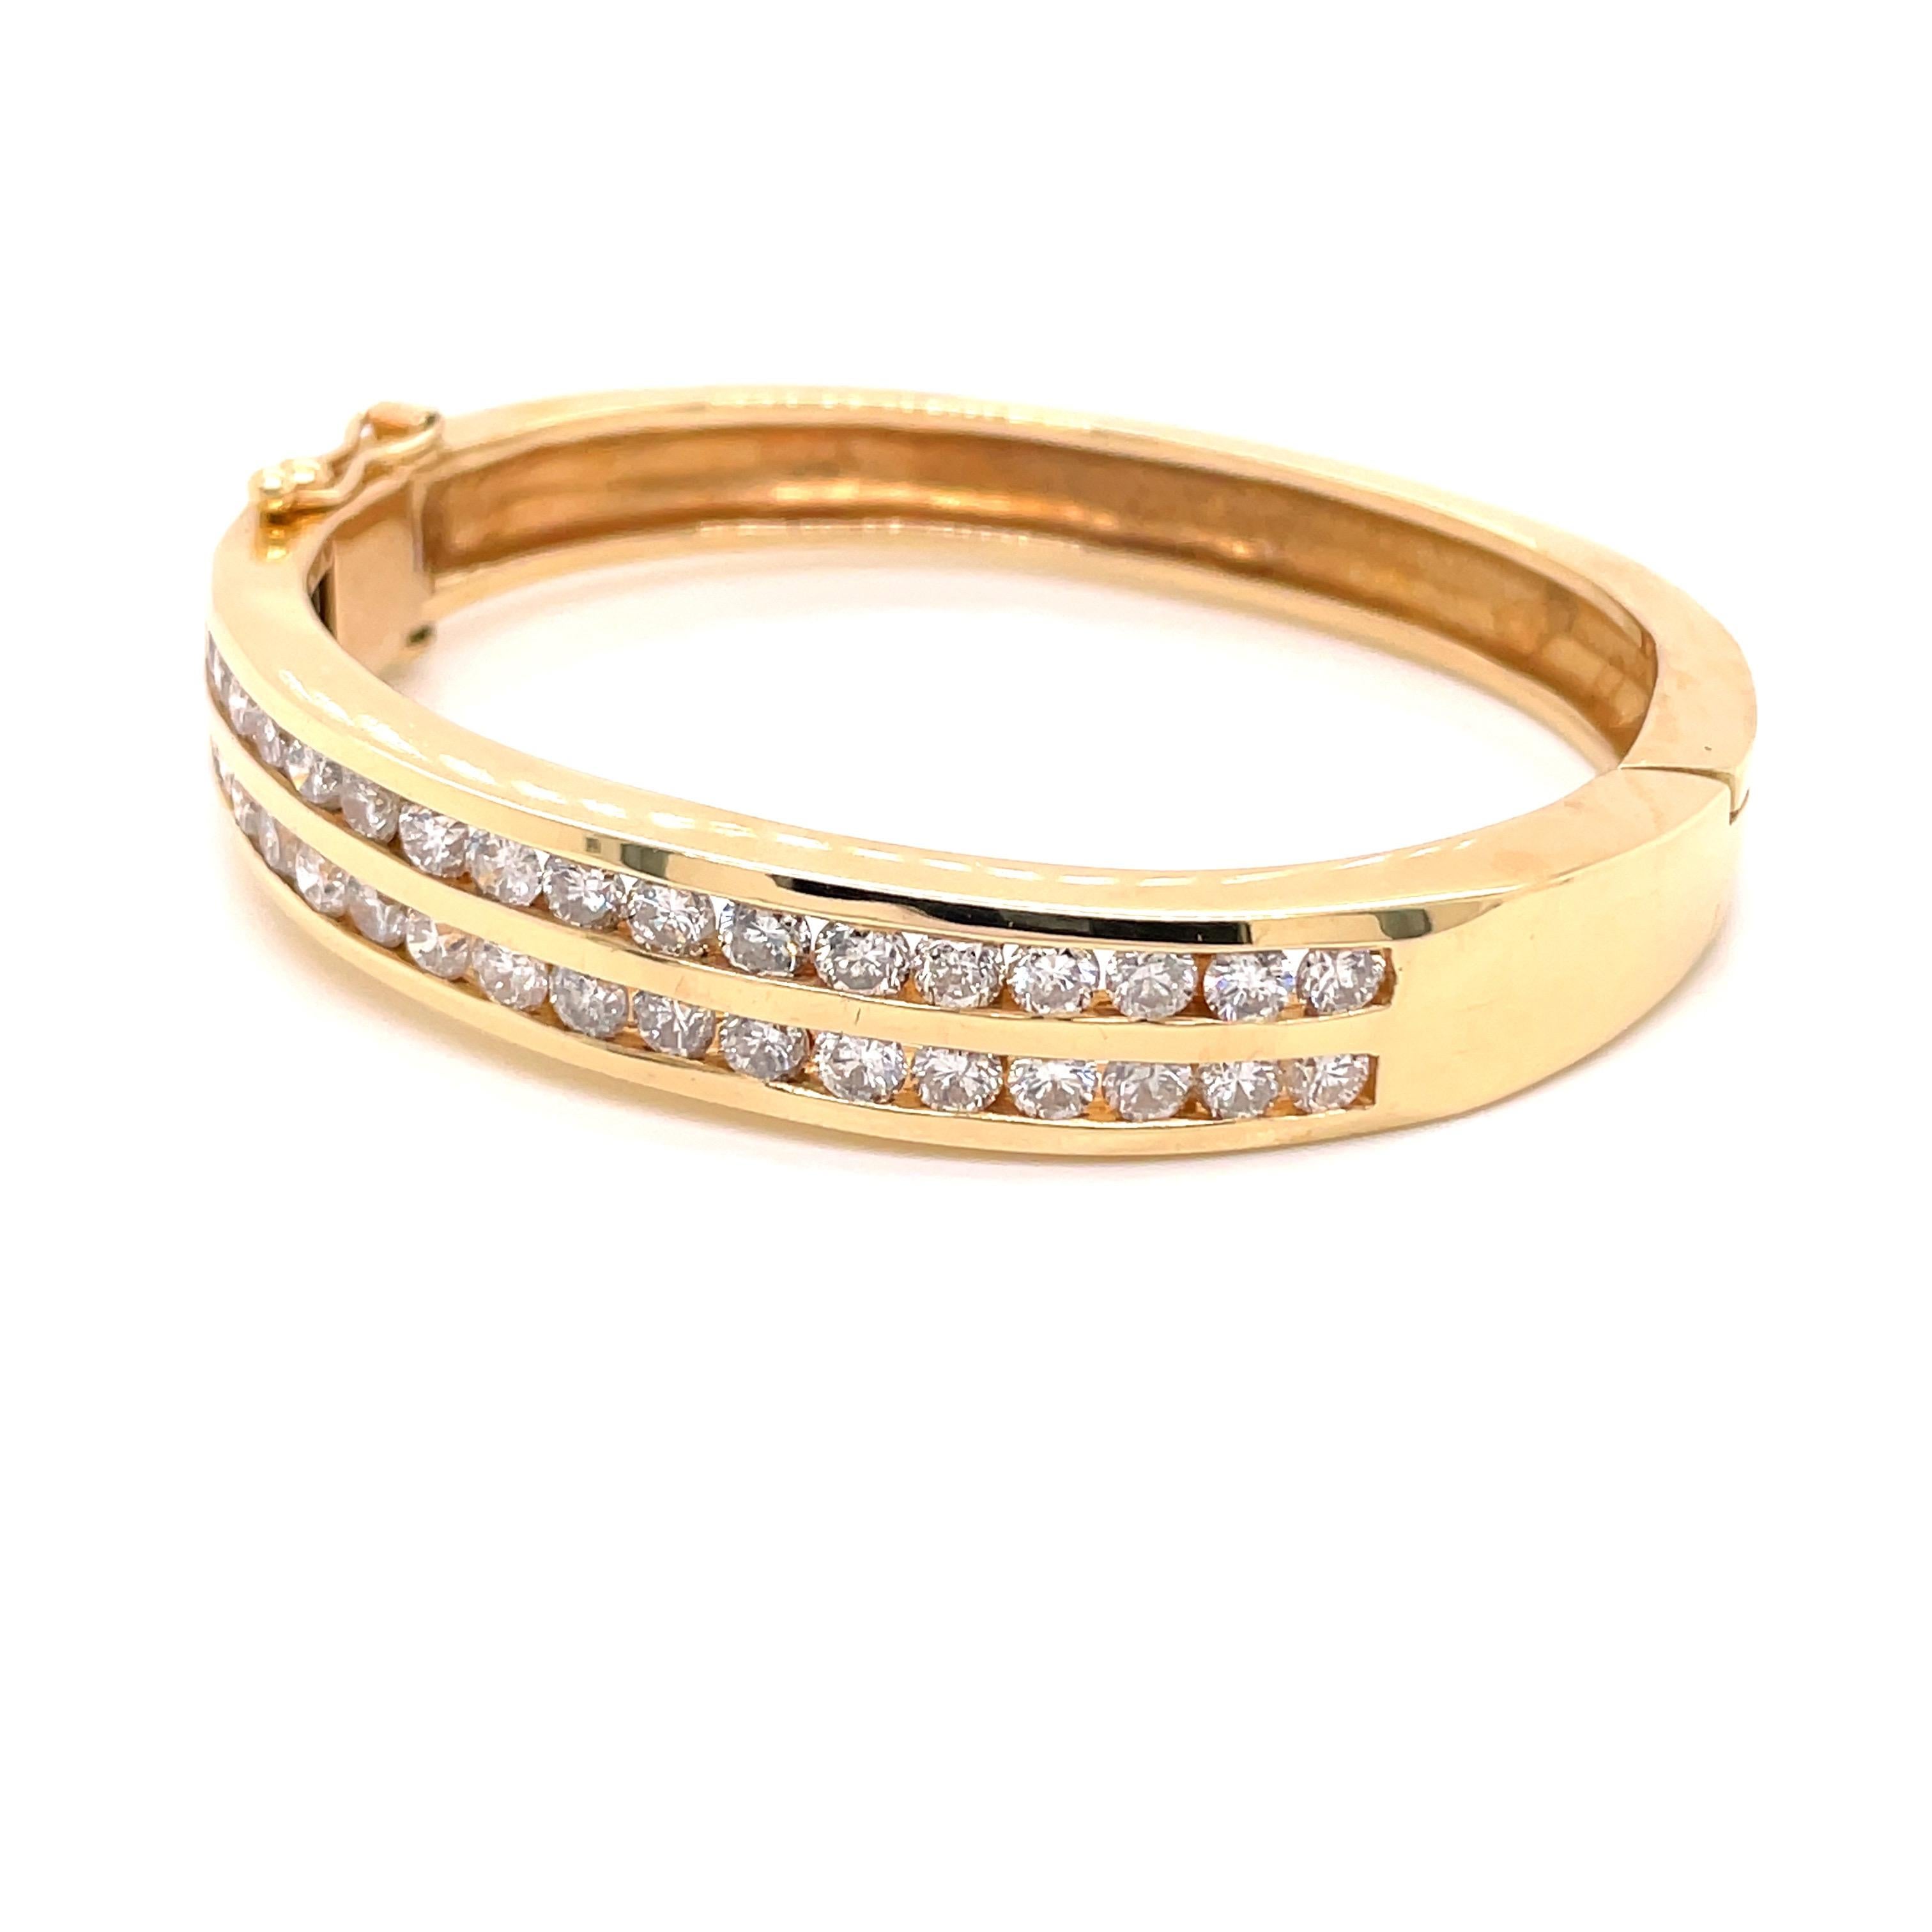 Bracelet en or jaune 14K à double canal de diamants 4.25ct - Le bracelet est serti de 34 diamants ronds de taille brillant pesant 4.25ct avec une couleur G-I et une clarté I1. La largeur du bracelet est de 9,7 mm sur le dessus et se réduit à 7,2 mm